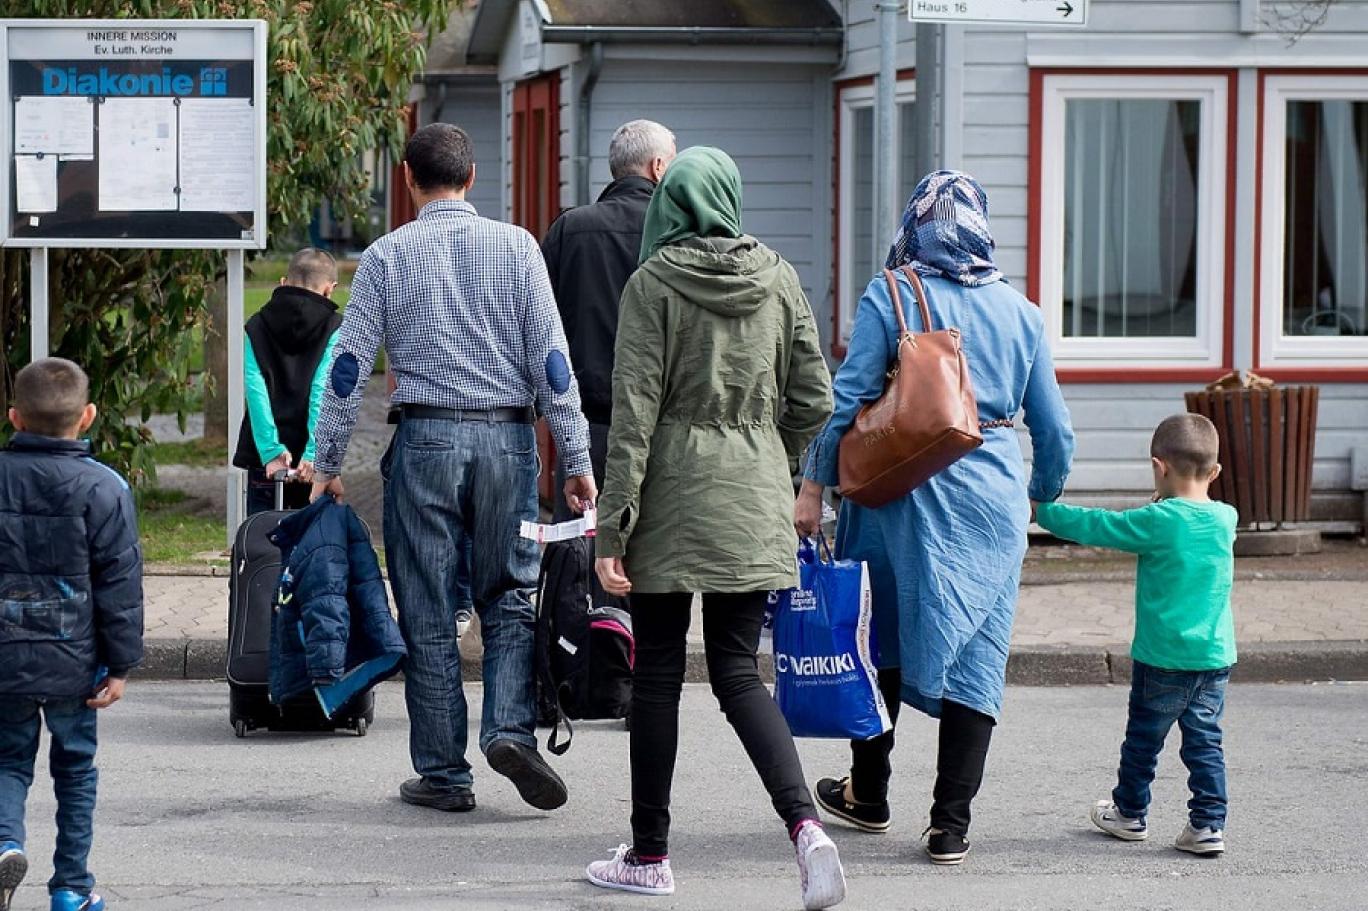 1 21 - بعد بريطانيا .. الدنمارك تبدأ محادثات لنقل اللاجئين إلى دولة أفريقية